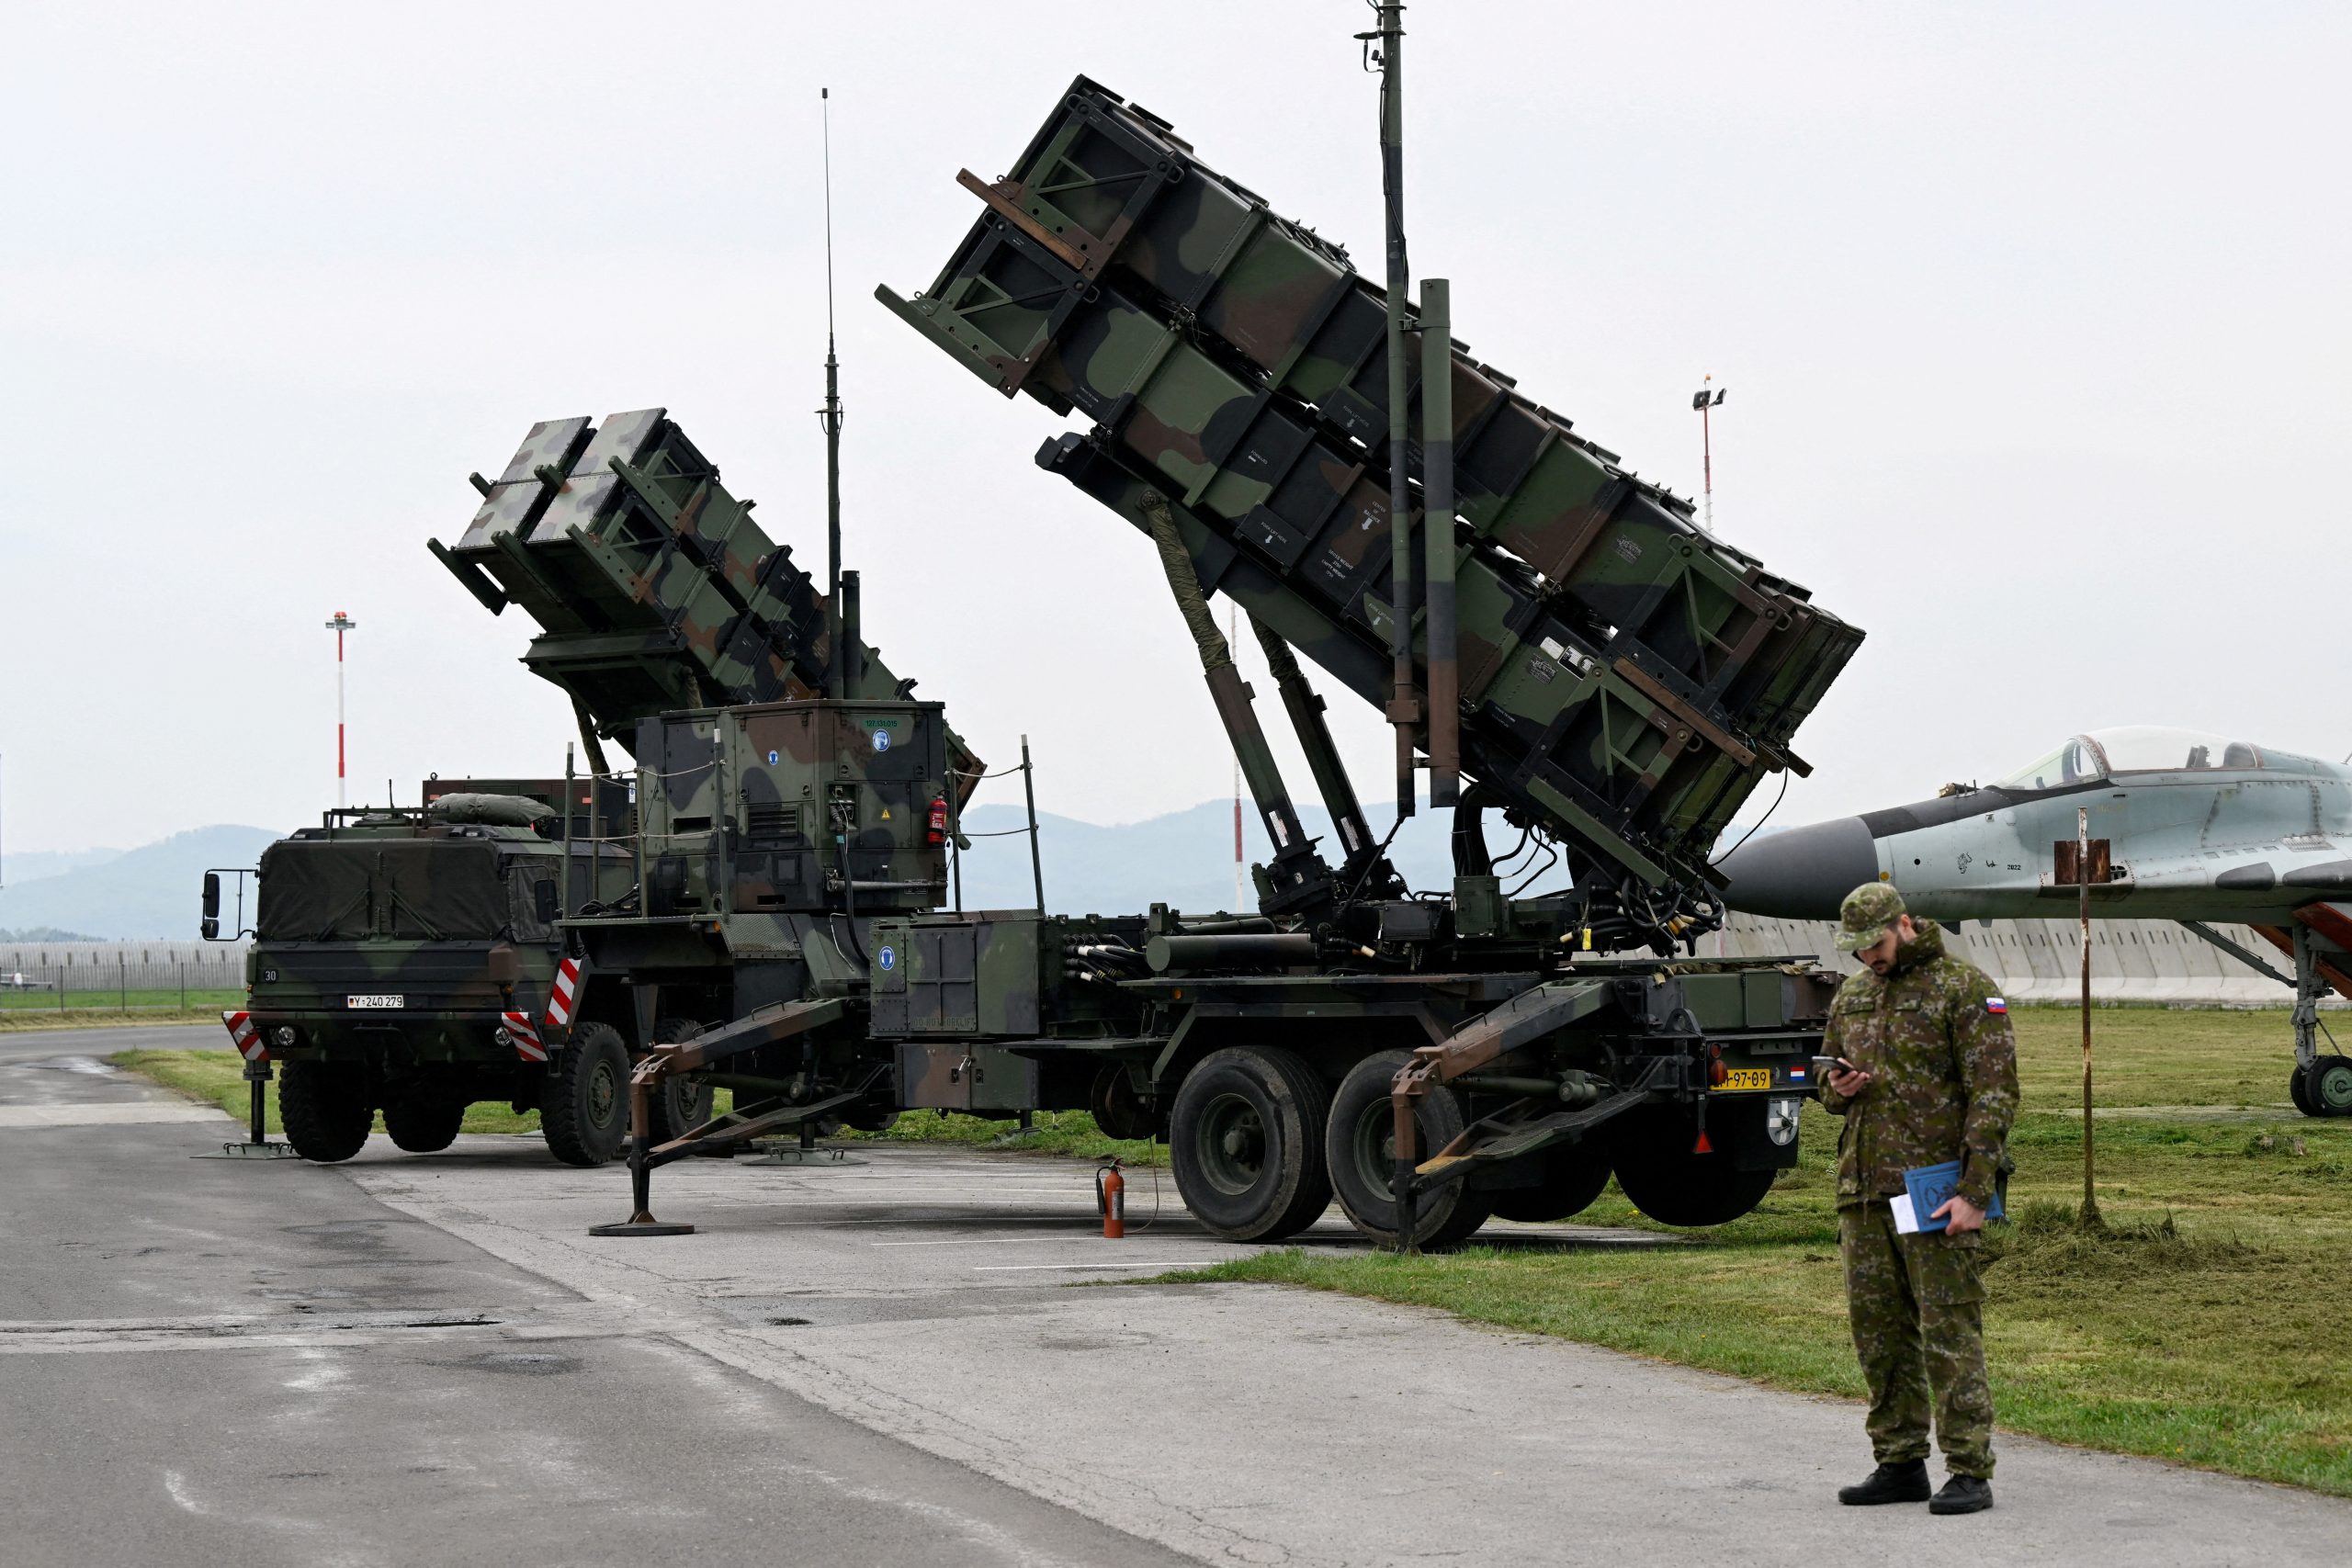 Ανησυχία στη Δύση για την καταστροφή δύο συστημάτων Patriot από τη Ρωσία στο Κίεβο! Καταστράφηκε εργοστάσιο παραγωγής πυραύλων